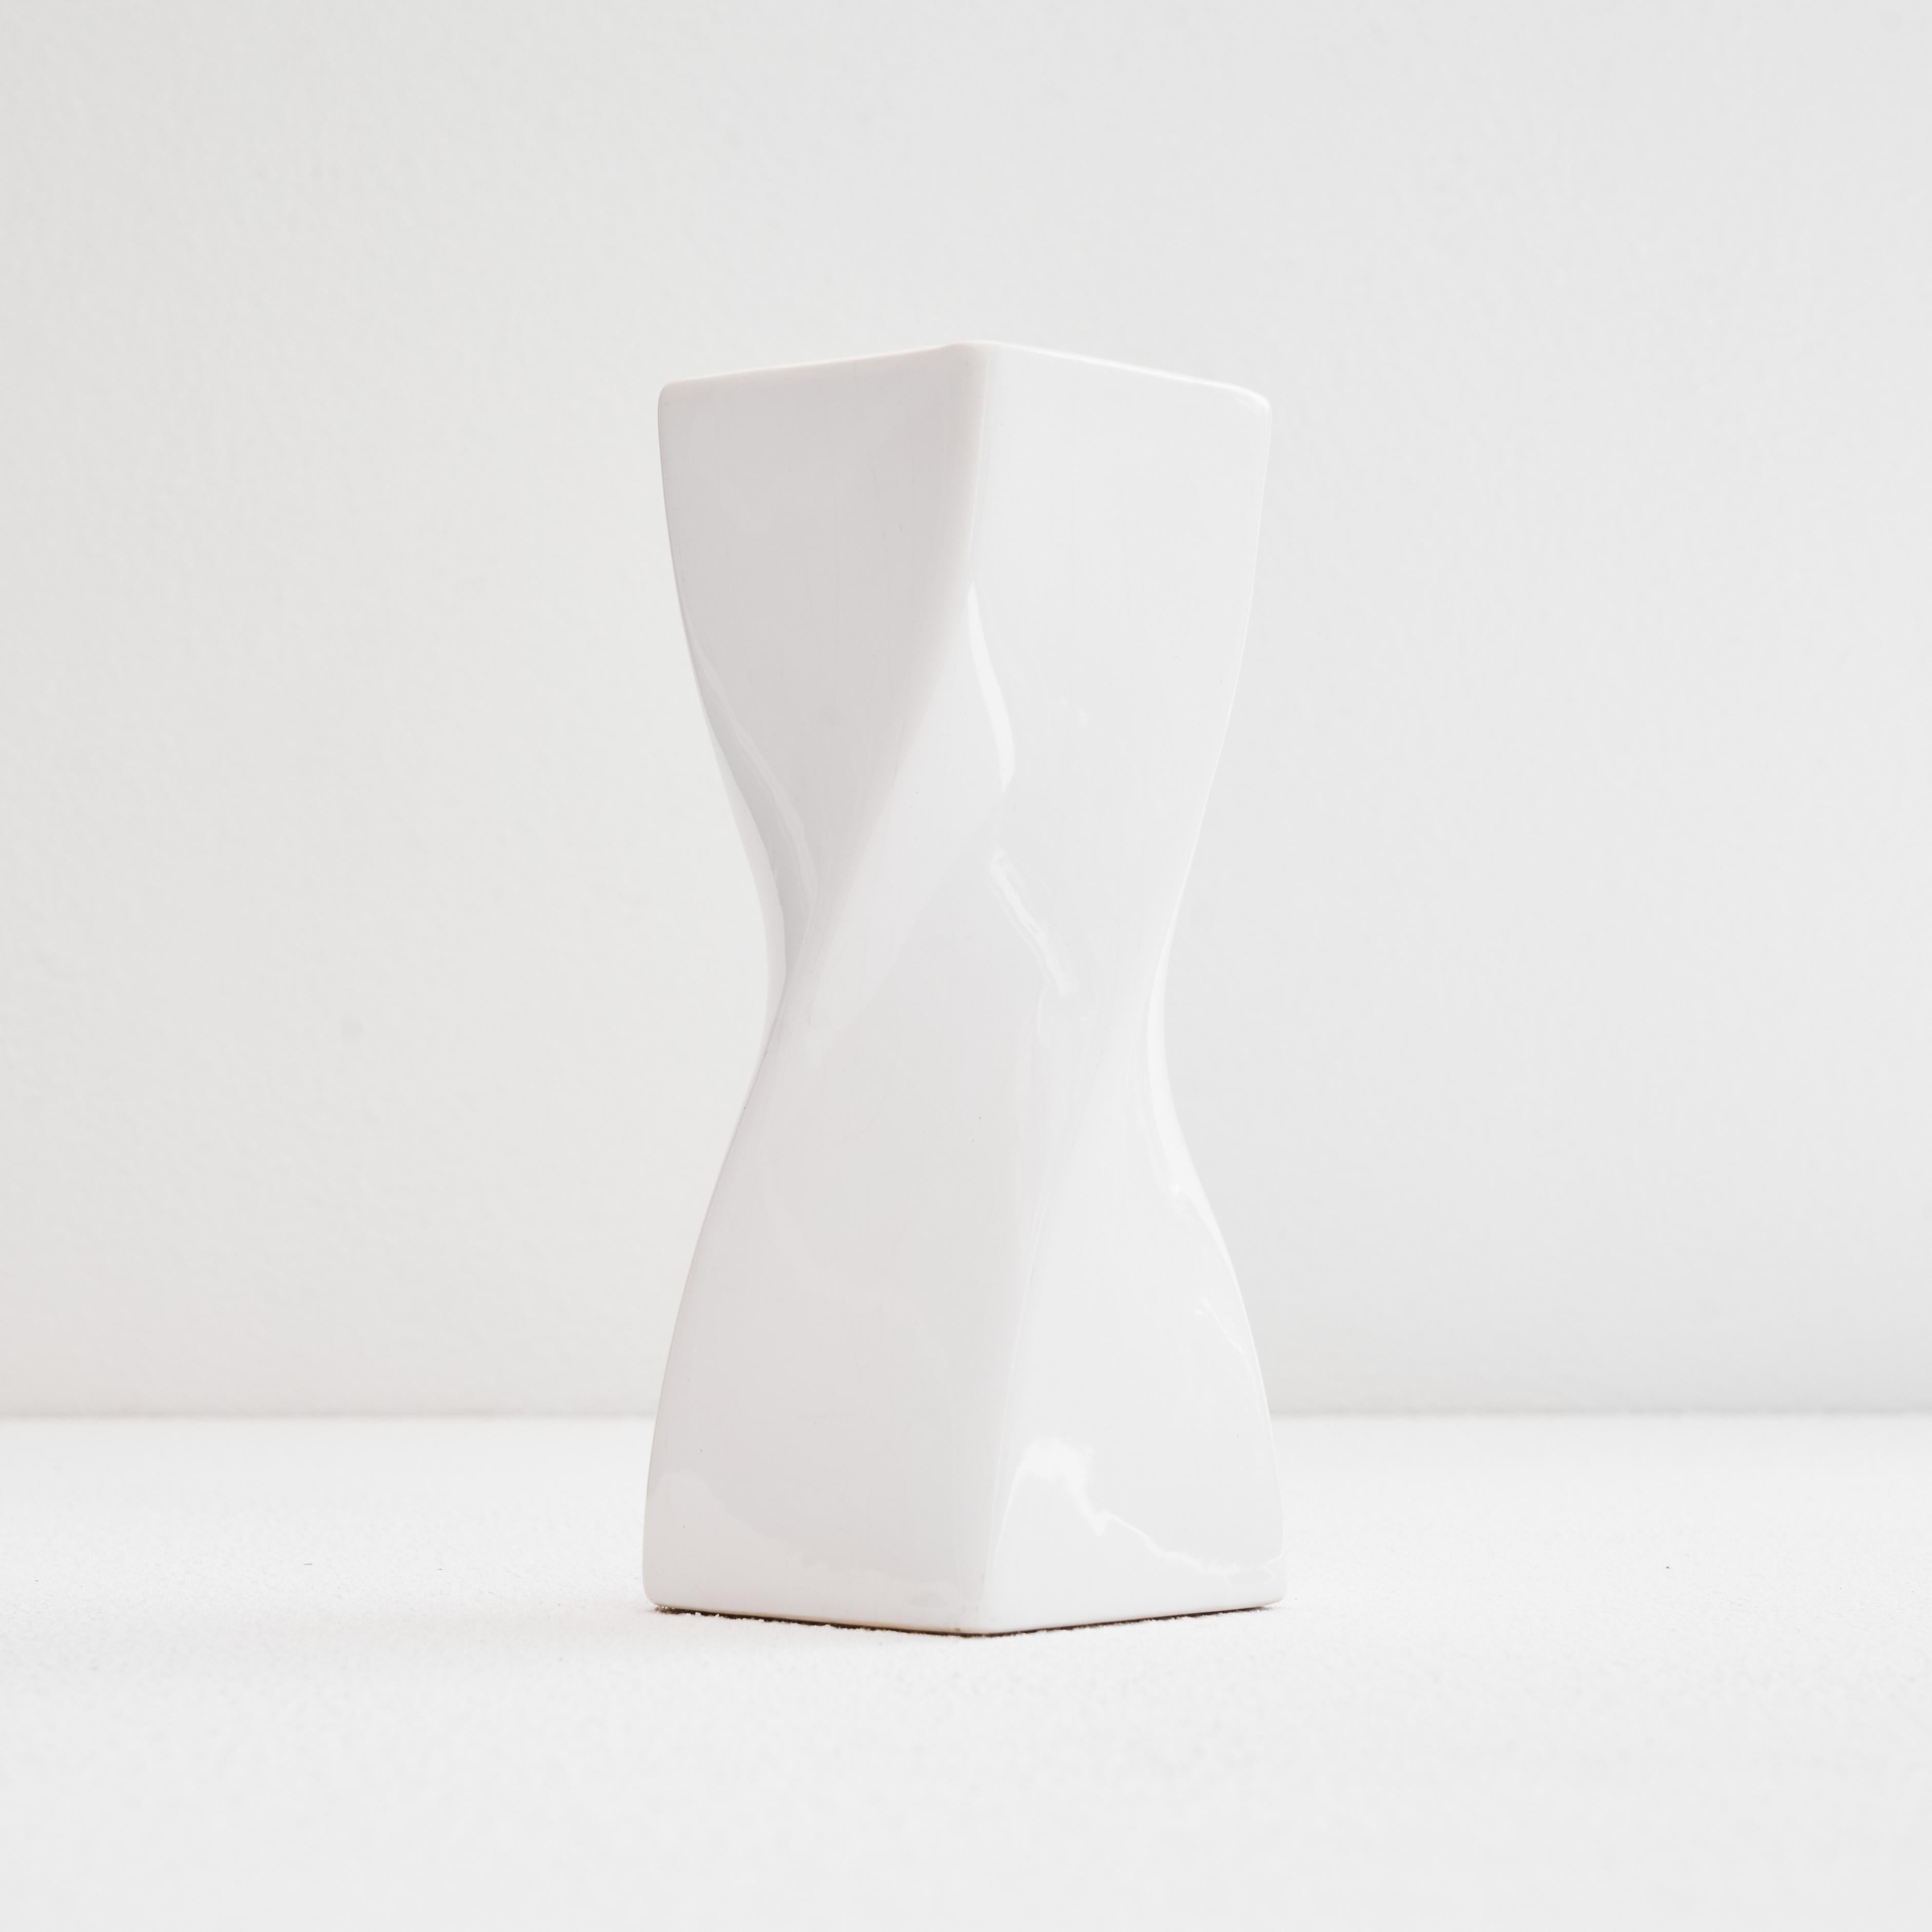 Twisted Vase in White Glazed Ceramic 1980s For Sale 1